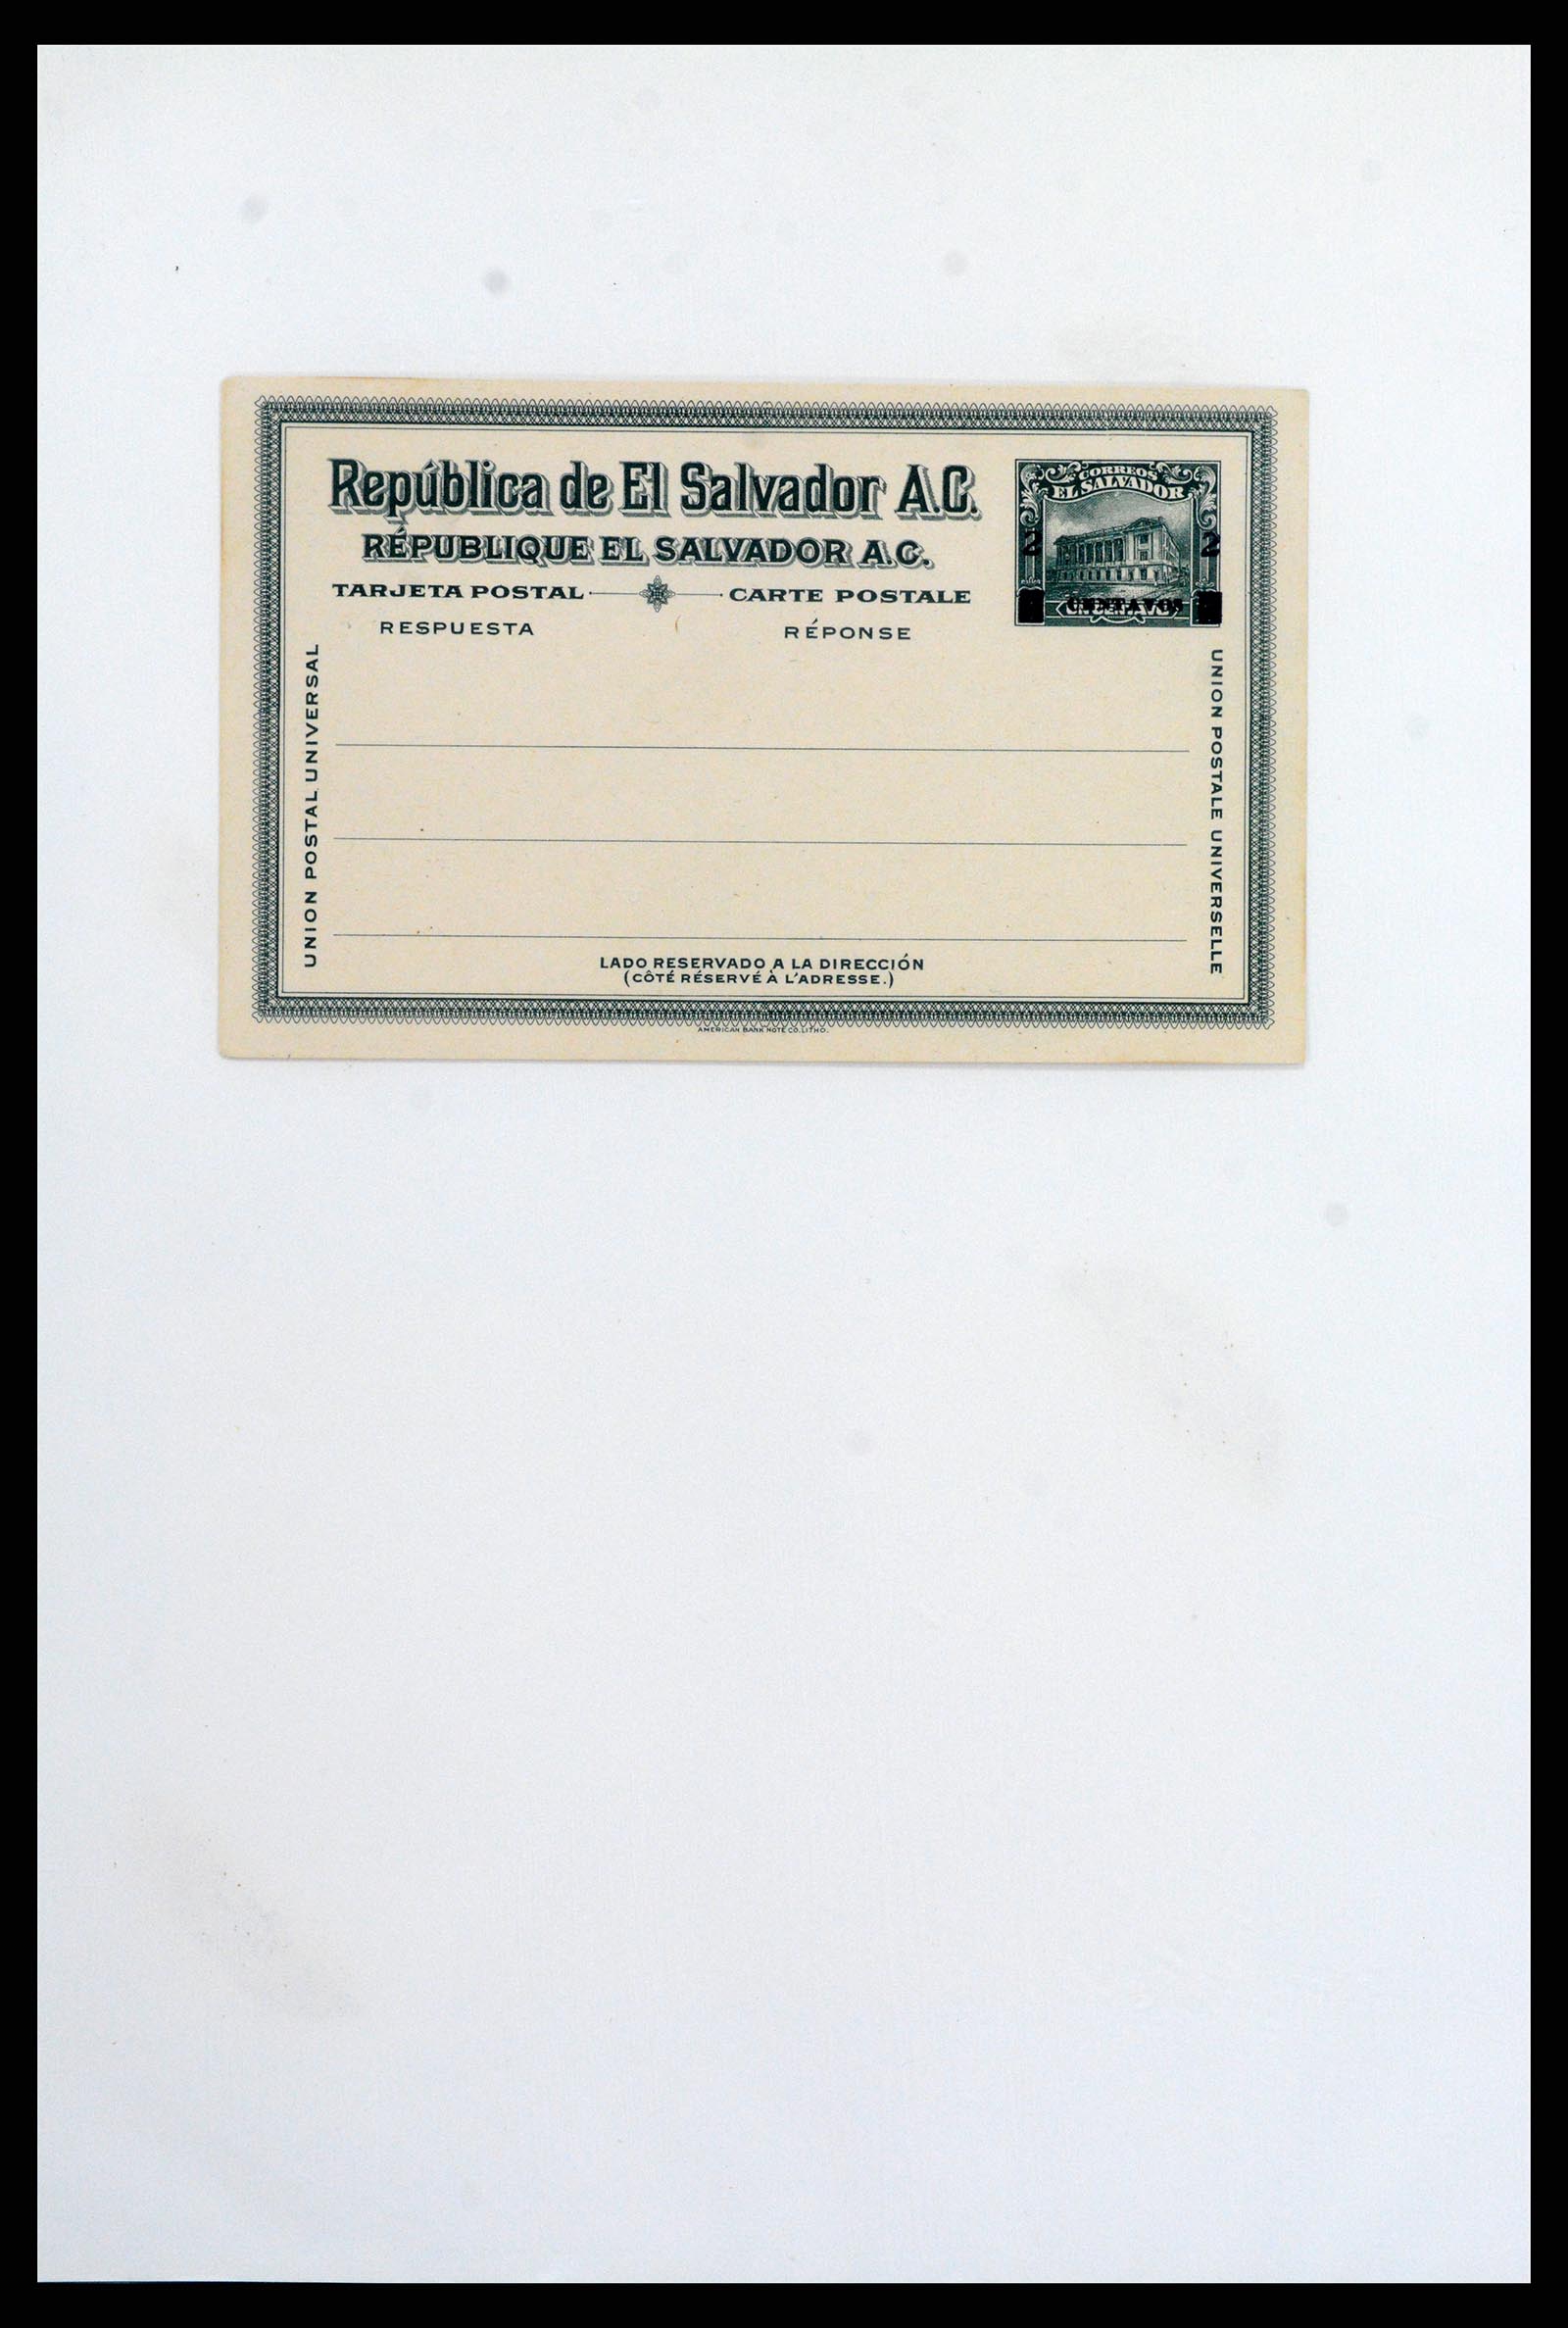 37412 028 - Stamp collection 37412 El Salvador trains 1891-1930.